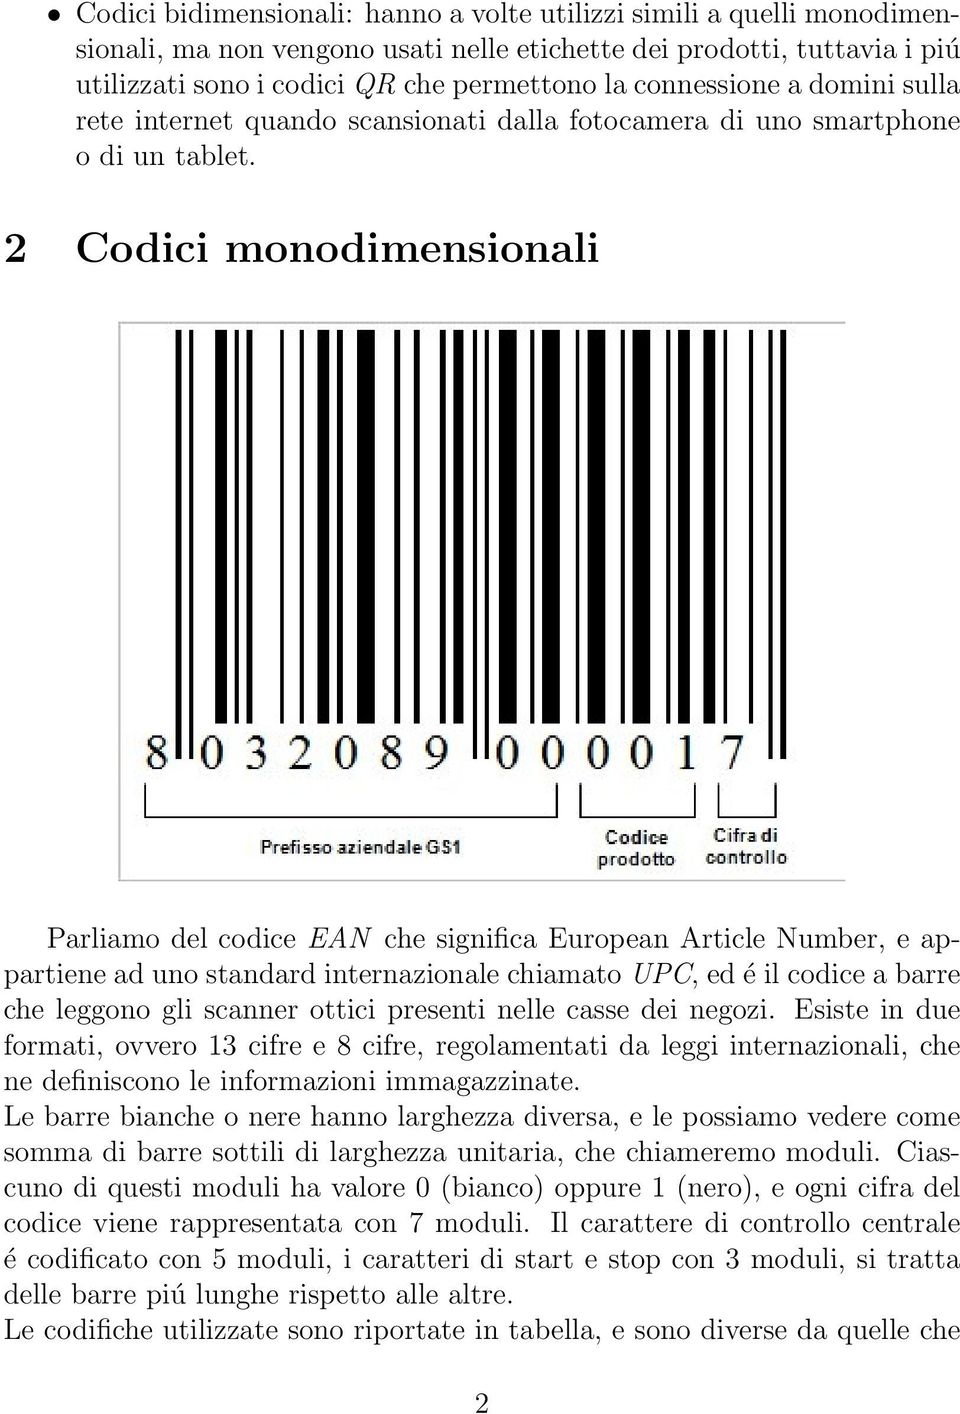 2 Codici monodimensionali Parliamo del codice EAN che significa European Article Number, e appartiene ad uno standard internazionale chiamato UPC, ed é il codice a barre che leggono gli scanner